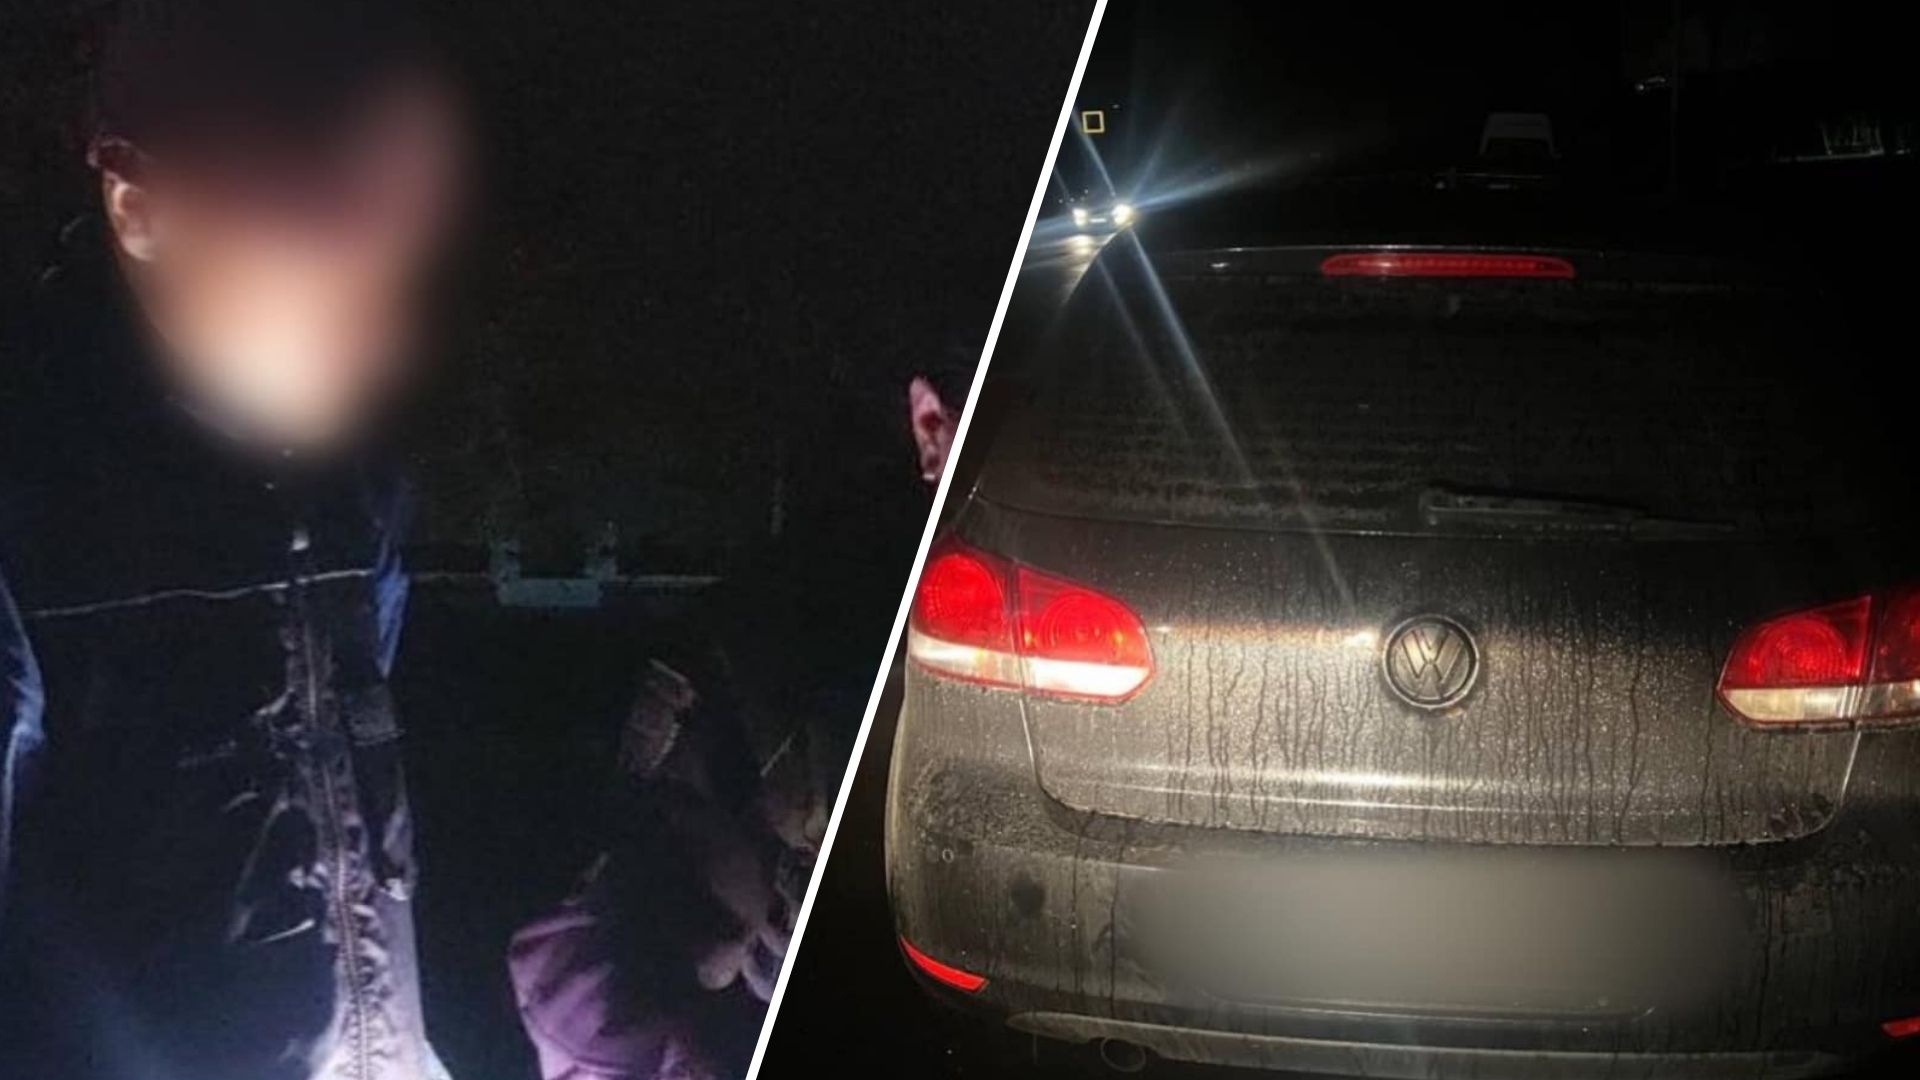 Ma éjfélkor az ungvári Svoboda sugárúton a járőrök megállították egy Volkswagen vezetőjét a közlekedési szabályok megsértése miatt.